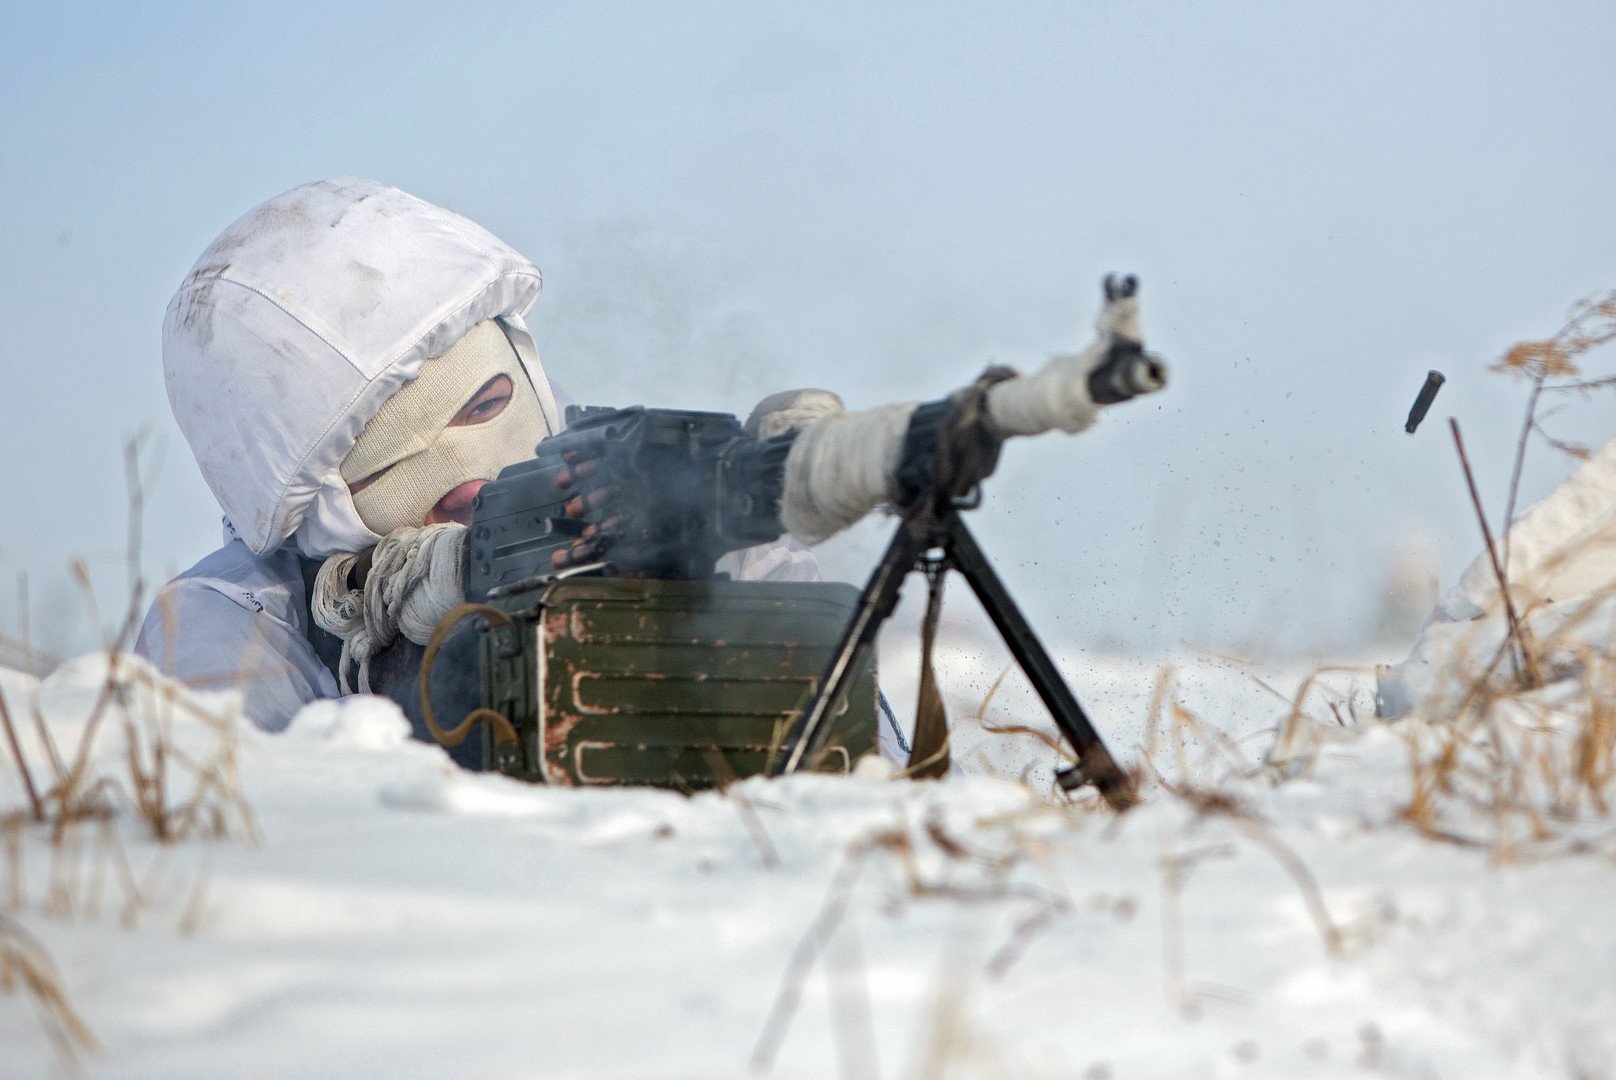 طالب ضابط من الكلية العليا أثناء التدرب في ظروف المنطقة الشمالية القطبية